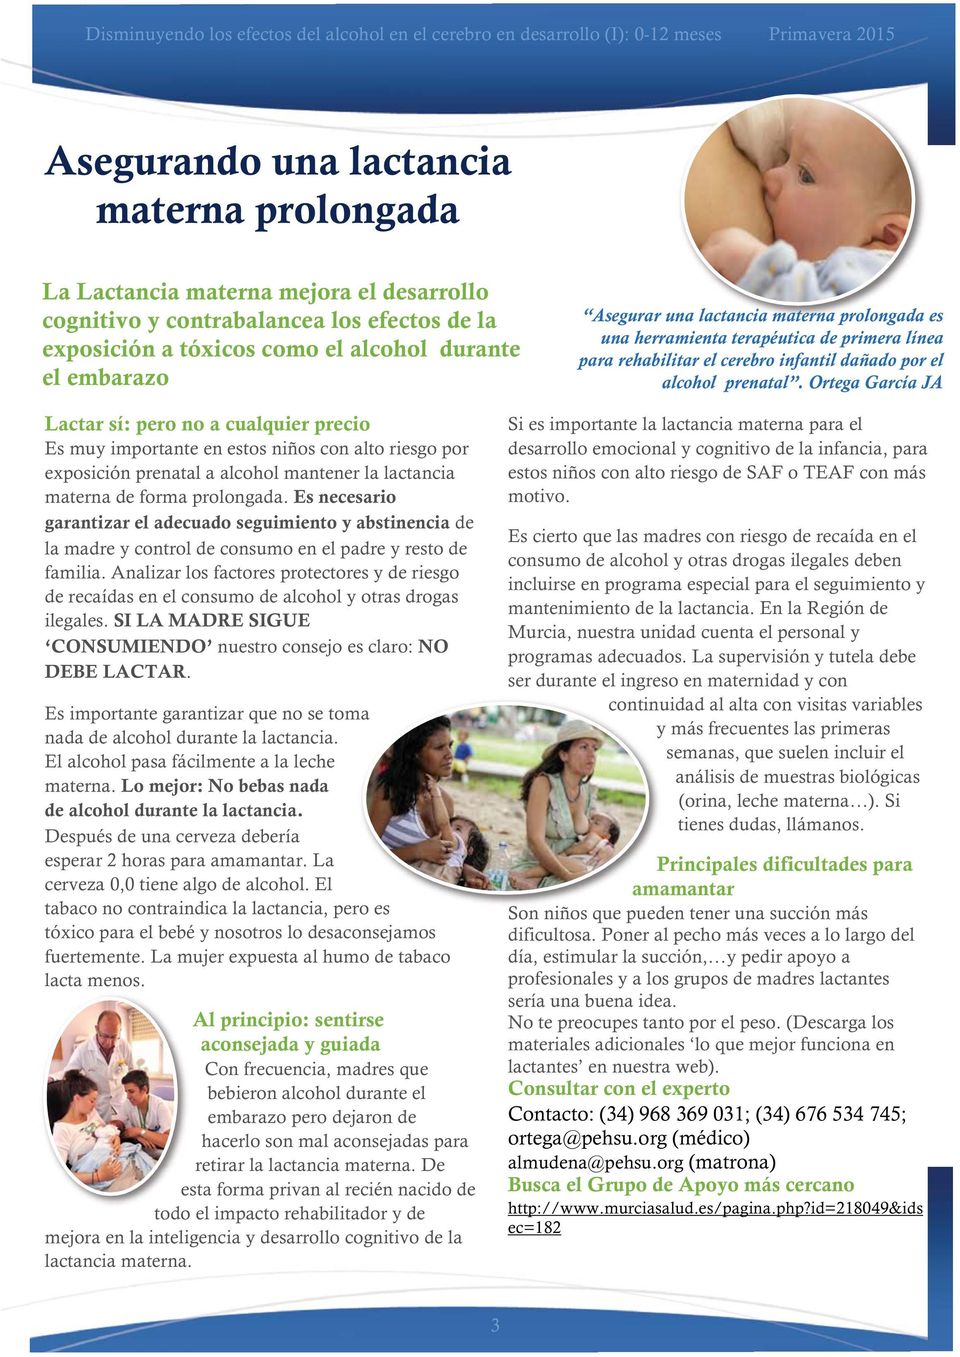 Ortega García JA Lactar sí: pero no a cualquier precio Es muy importante en estos niños con alto riesgo por exposición prenatal a alcohol mantener la lactancia materna de forma prolongada.